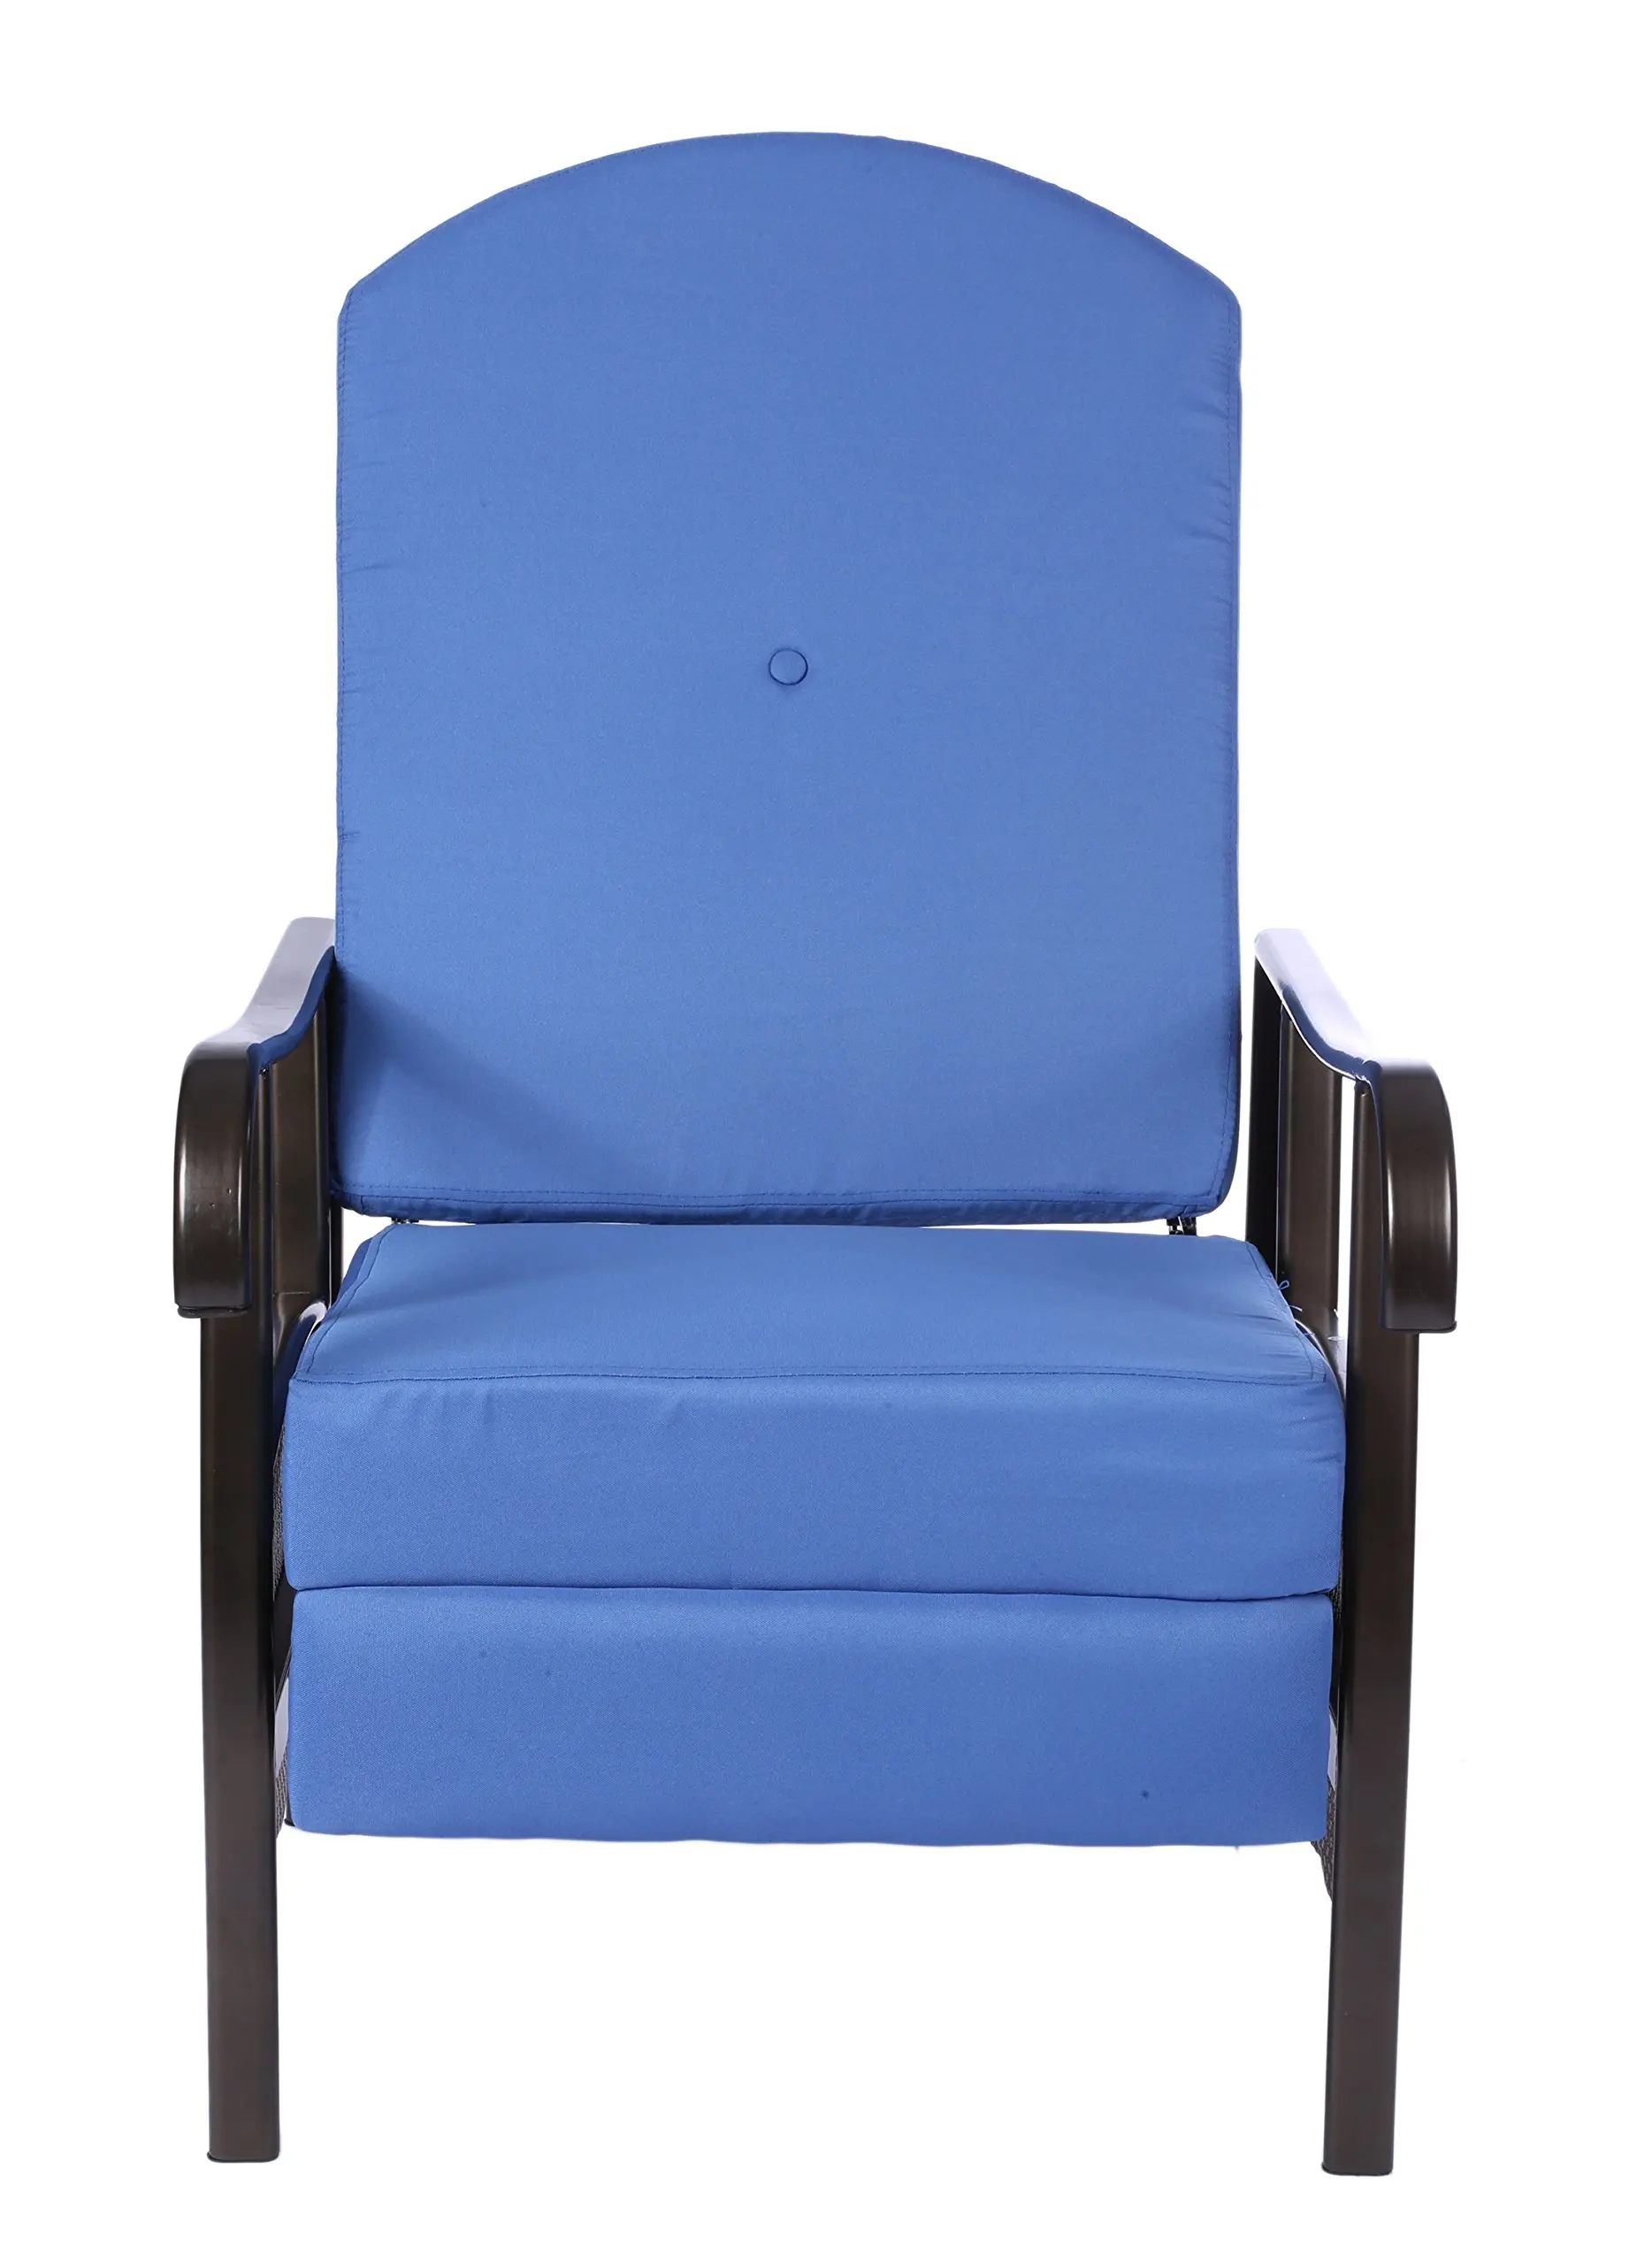 Buy Outsunny Indoor/Outdoor Garden Wicker Adjustable Recliner Chair